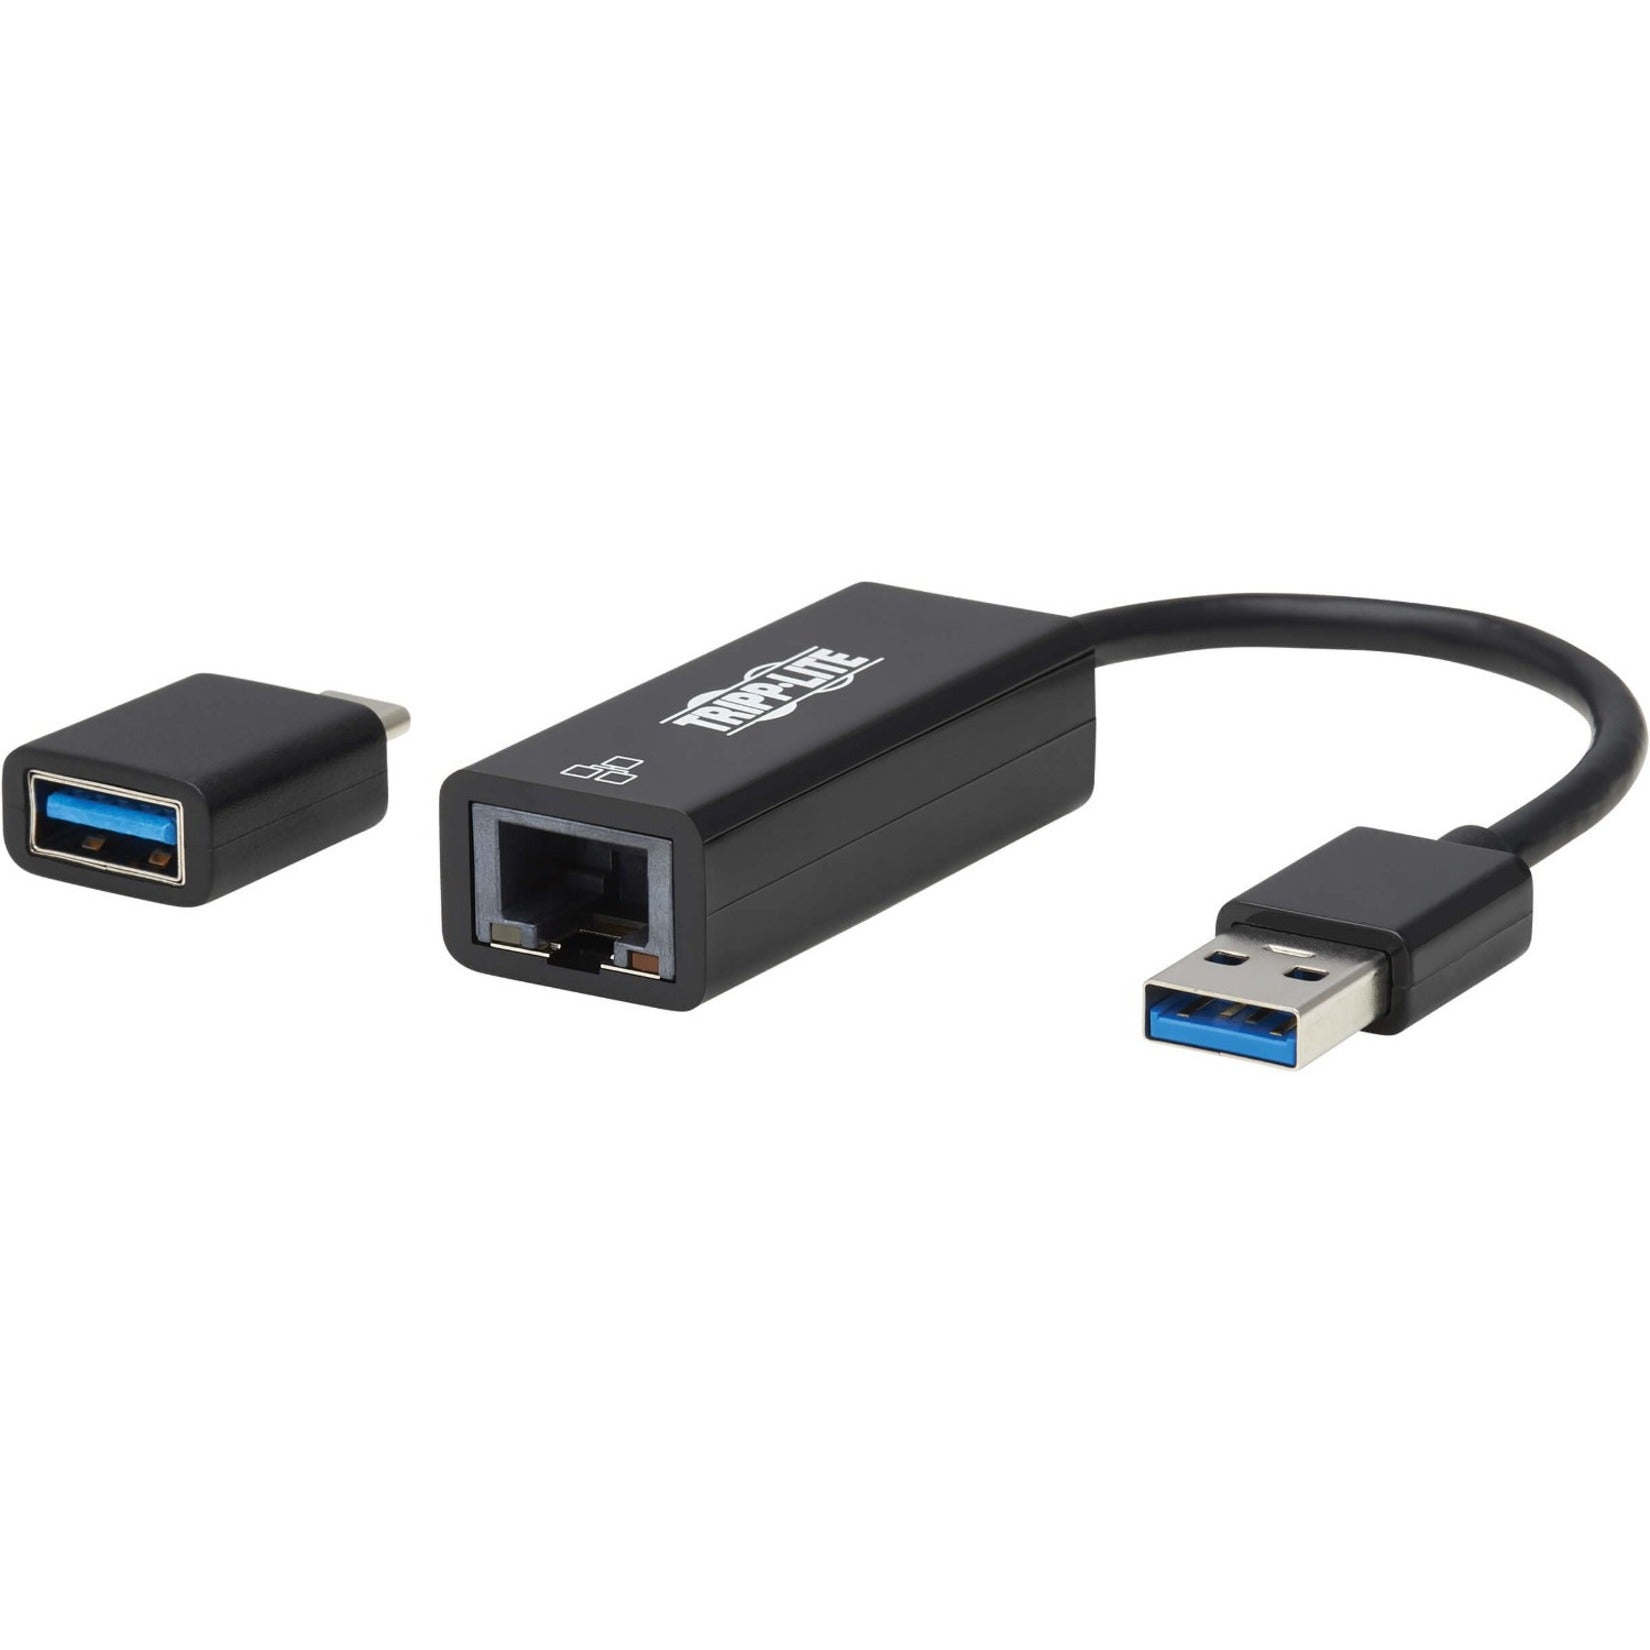 Tripp Lite U336-000-GB-CA Gigabit Ethernet Card, USB 3.0 Type A, Plug and Play